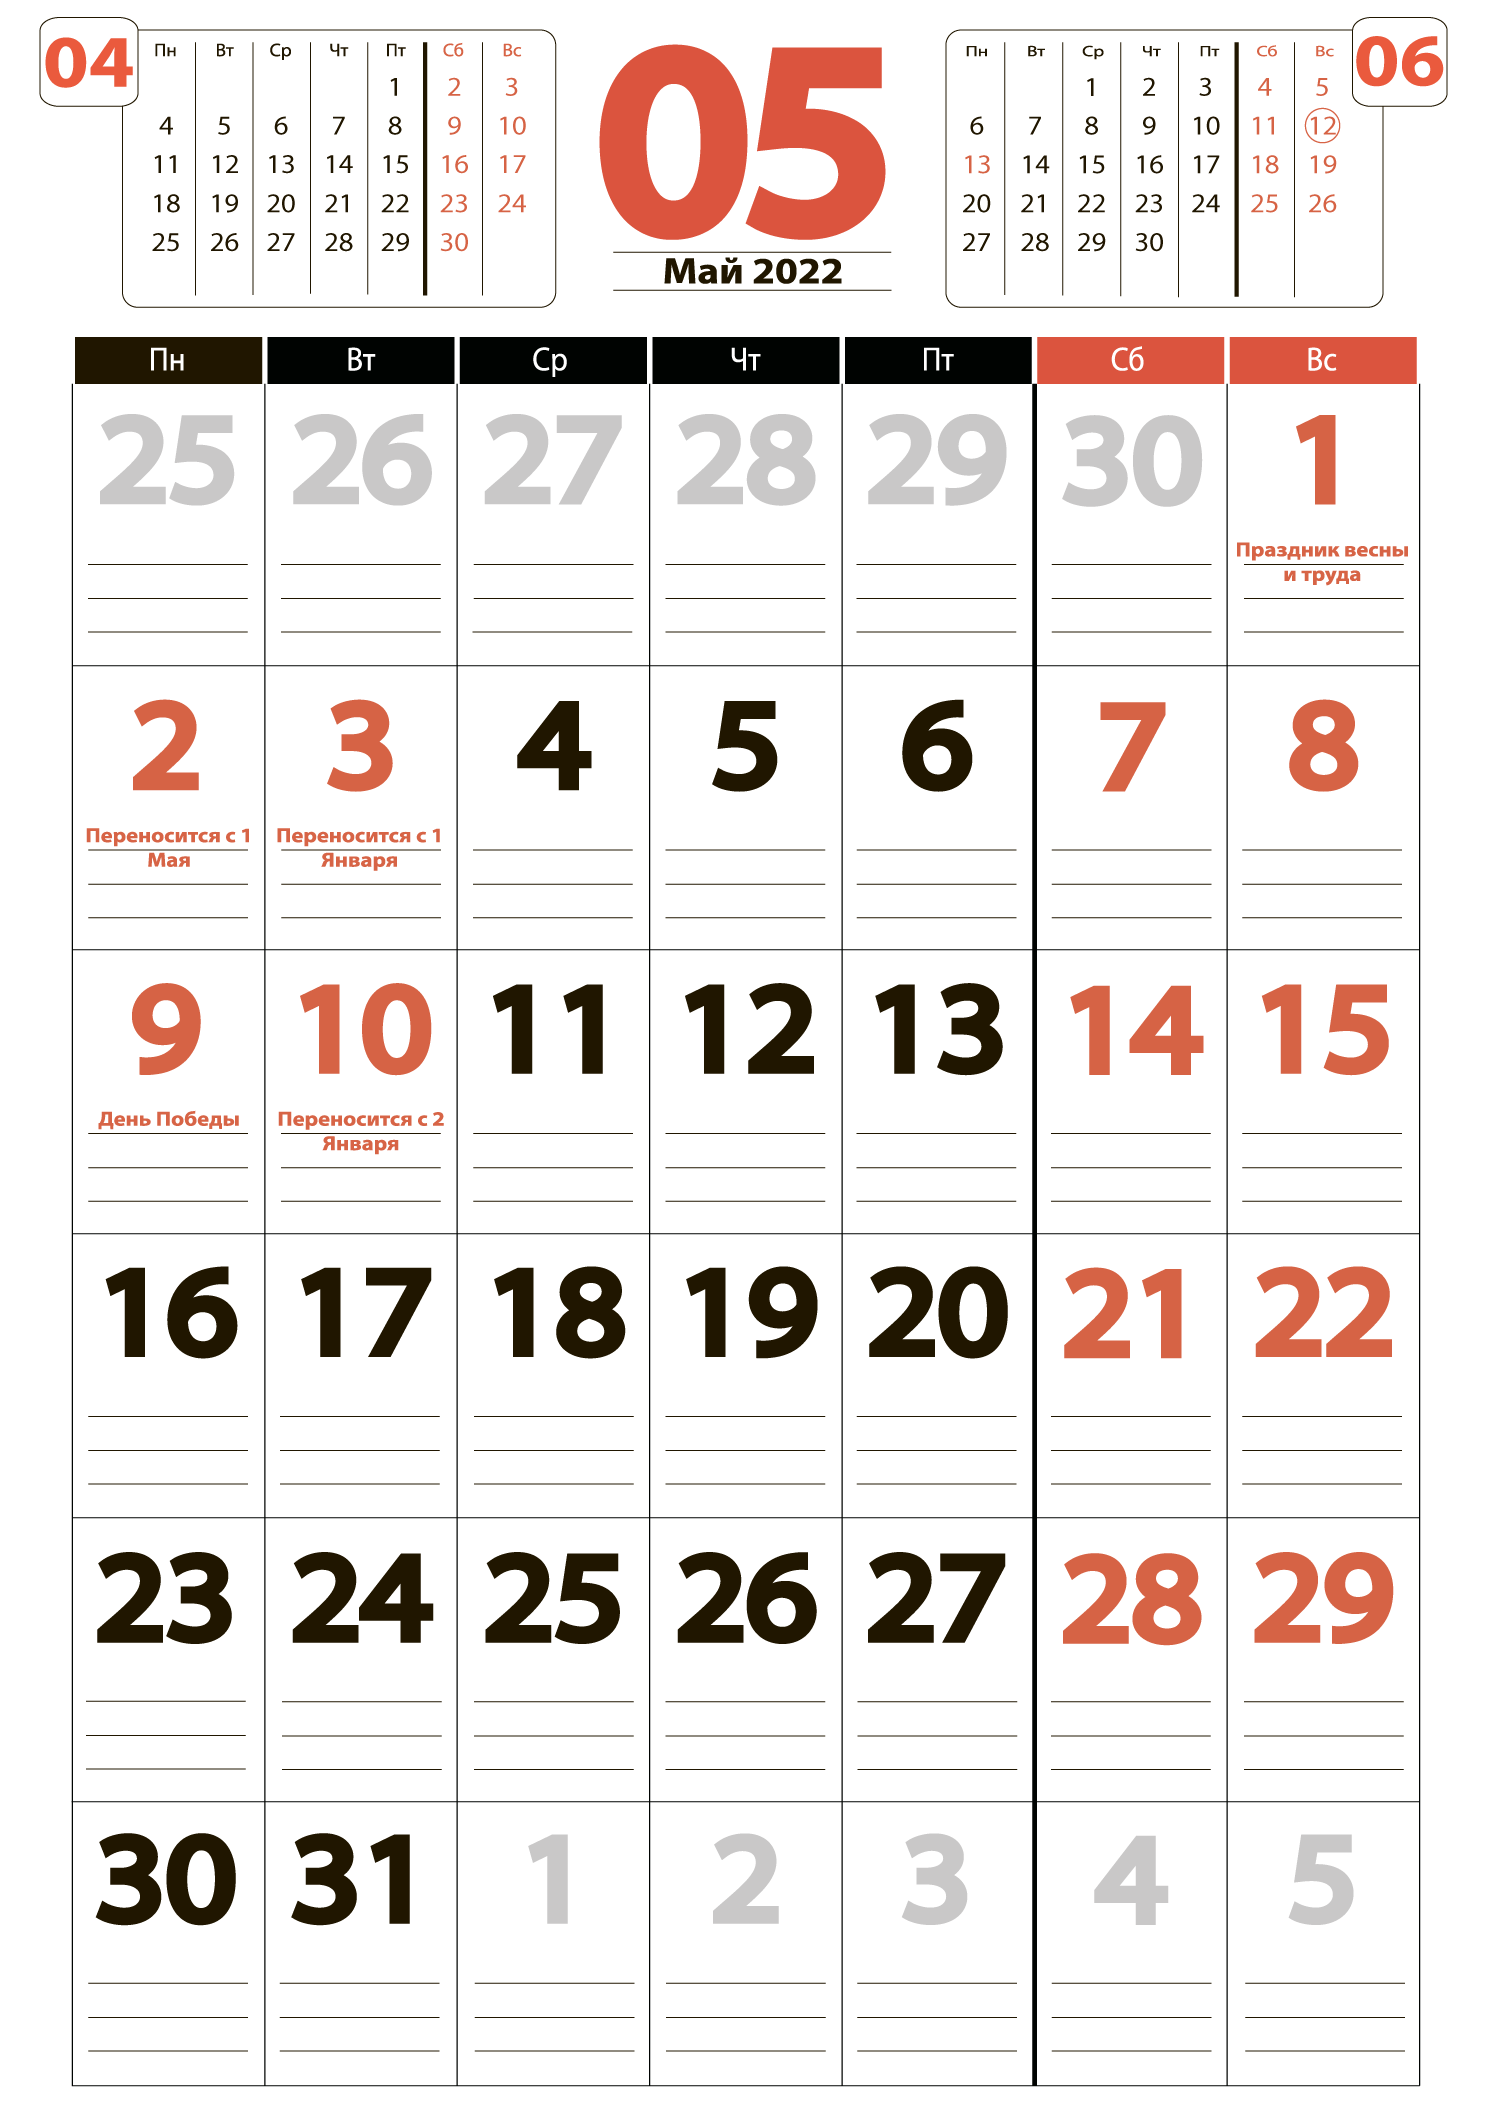 Печать крупного календаря на май 2022